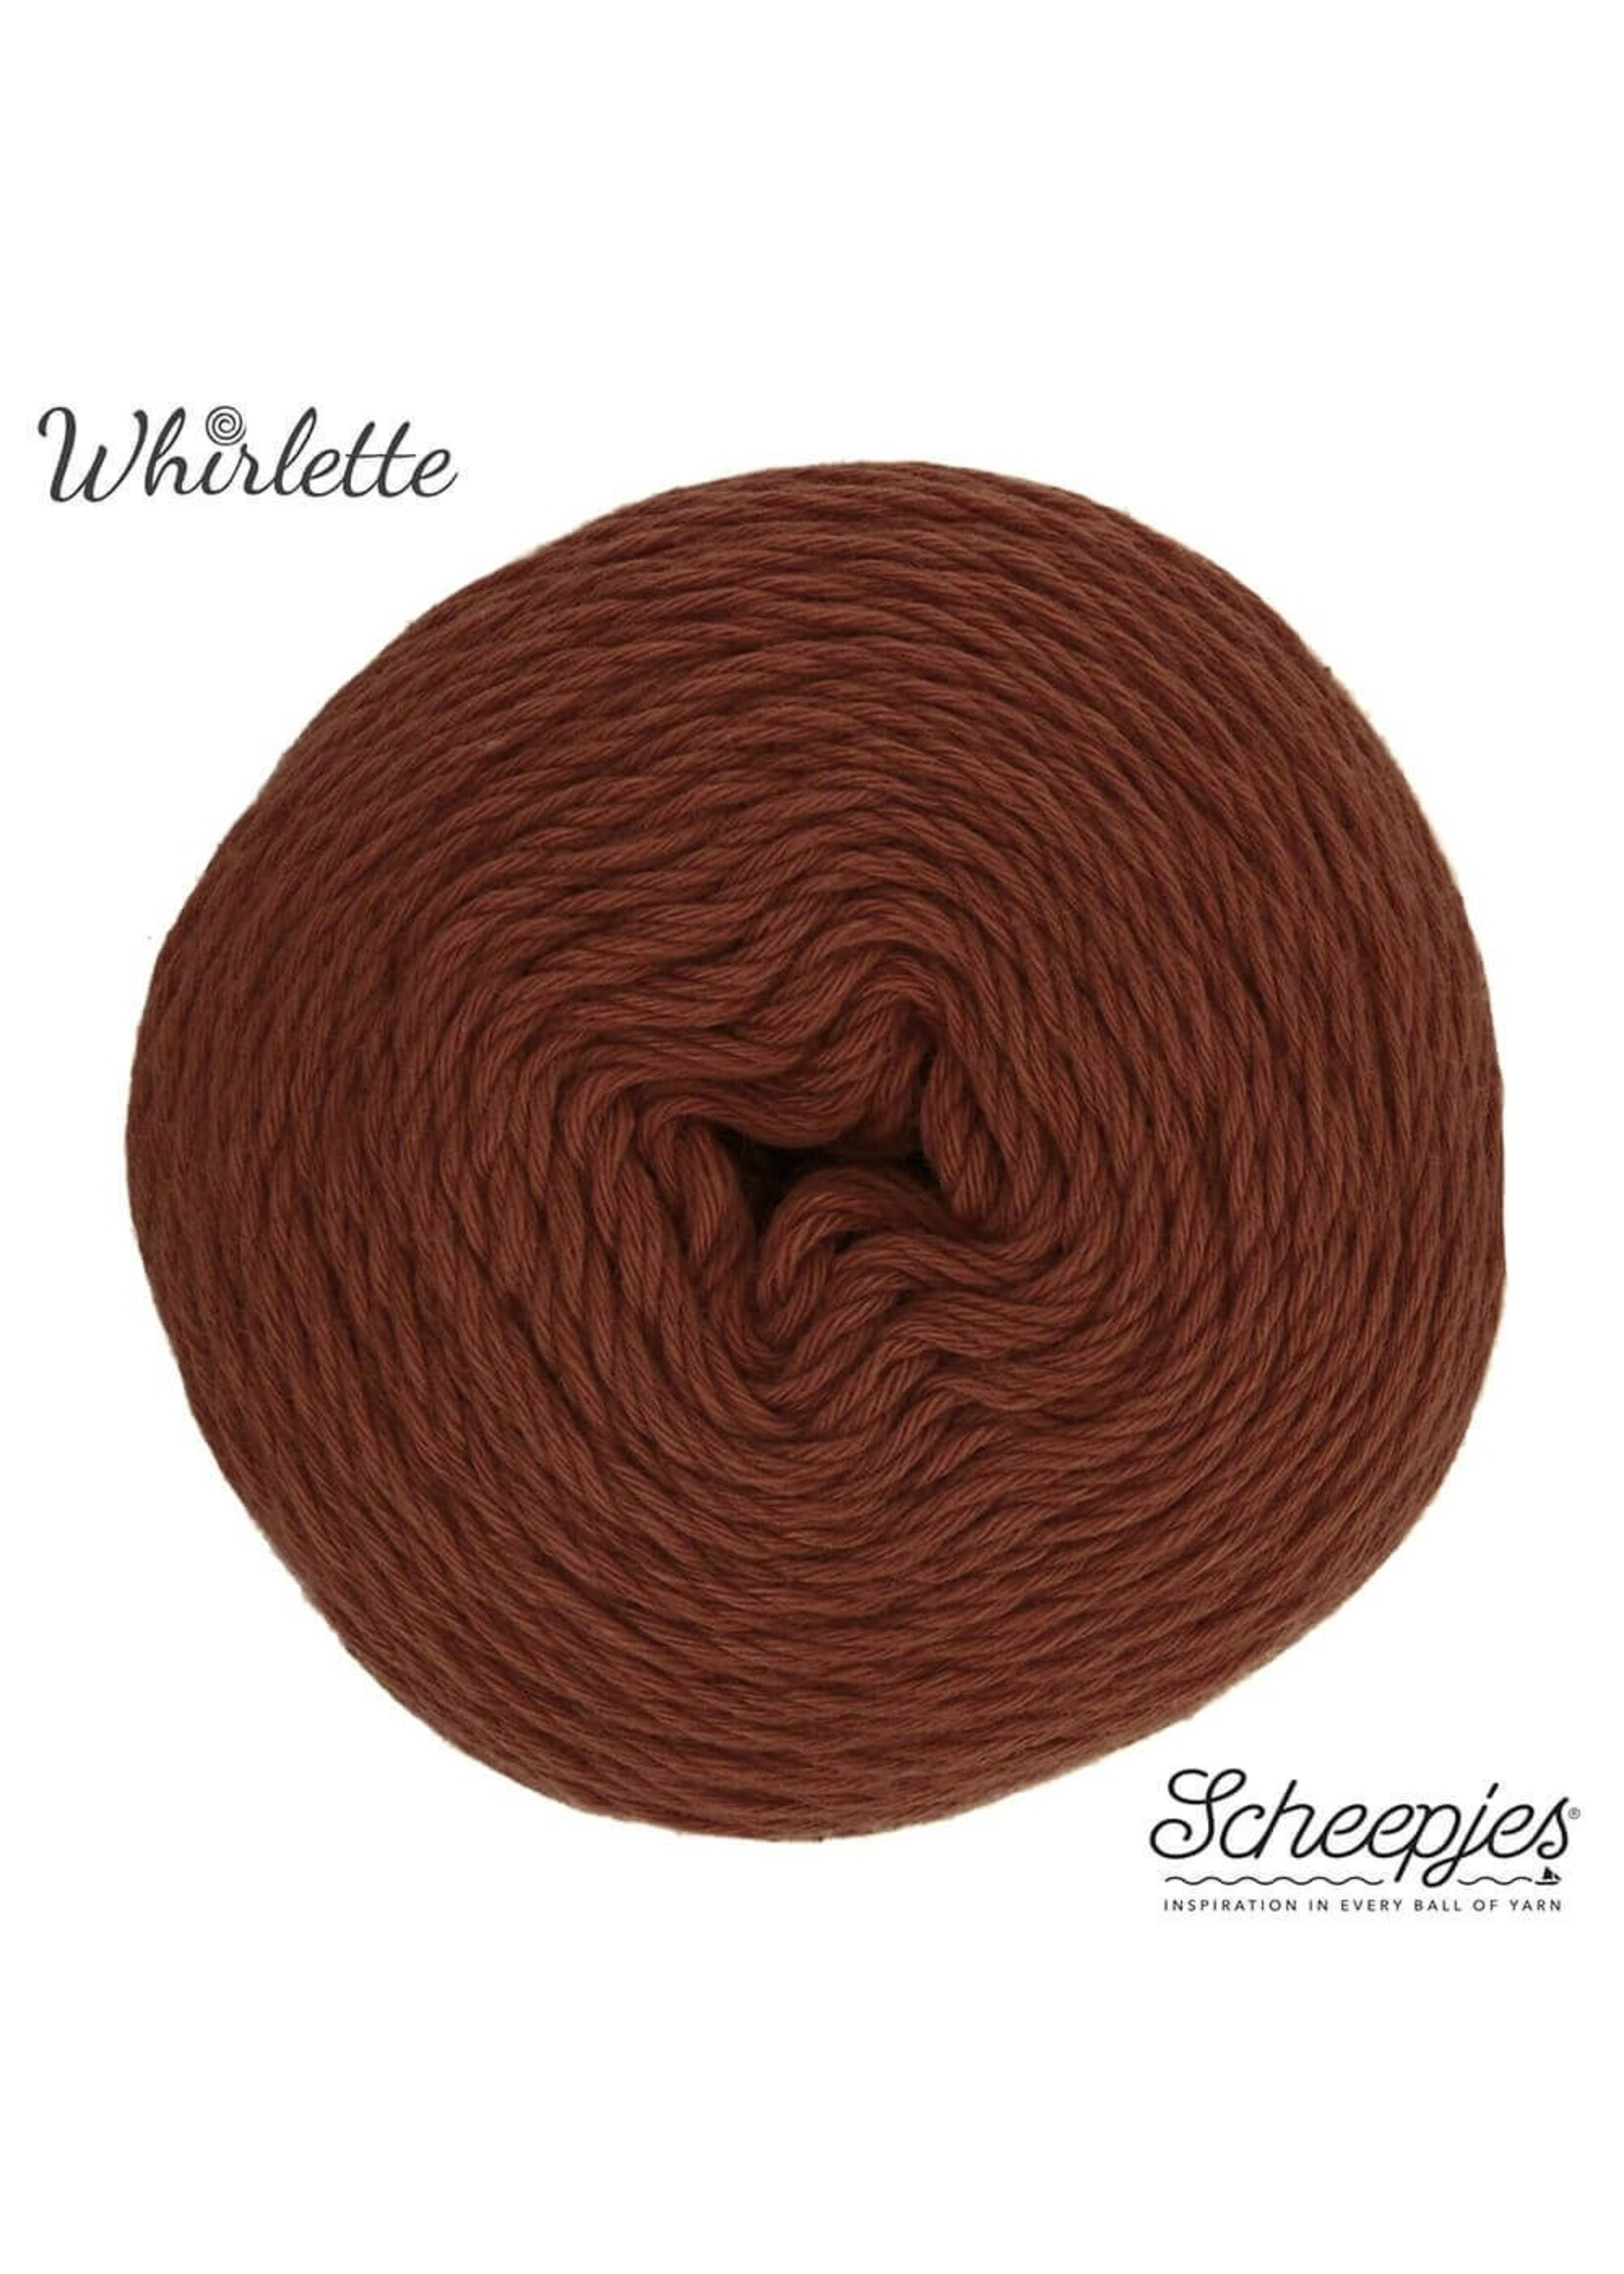 Scheepjes Whirlette - 863 Chocolate